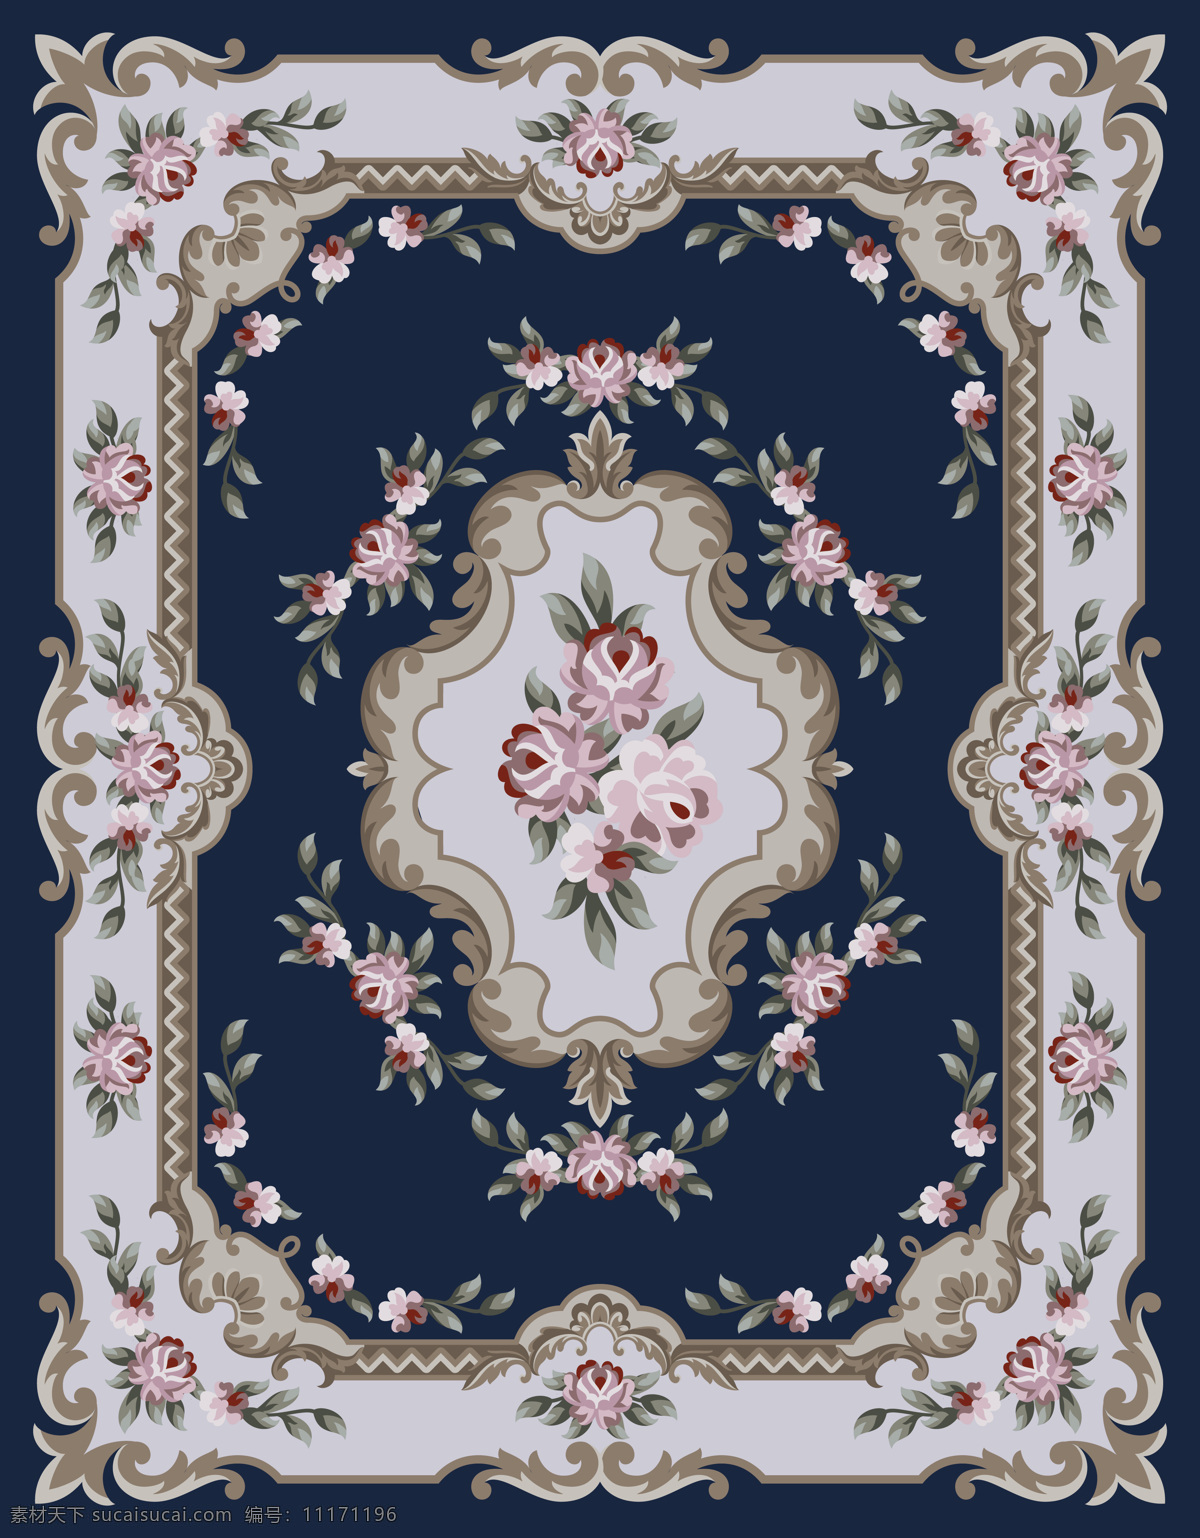 地毯设计 地毯图案 传统图案 欧式传统图案 欧式图案 边花 玫瑰图案 边框 相框 图案 花边花纹 底纹边框